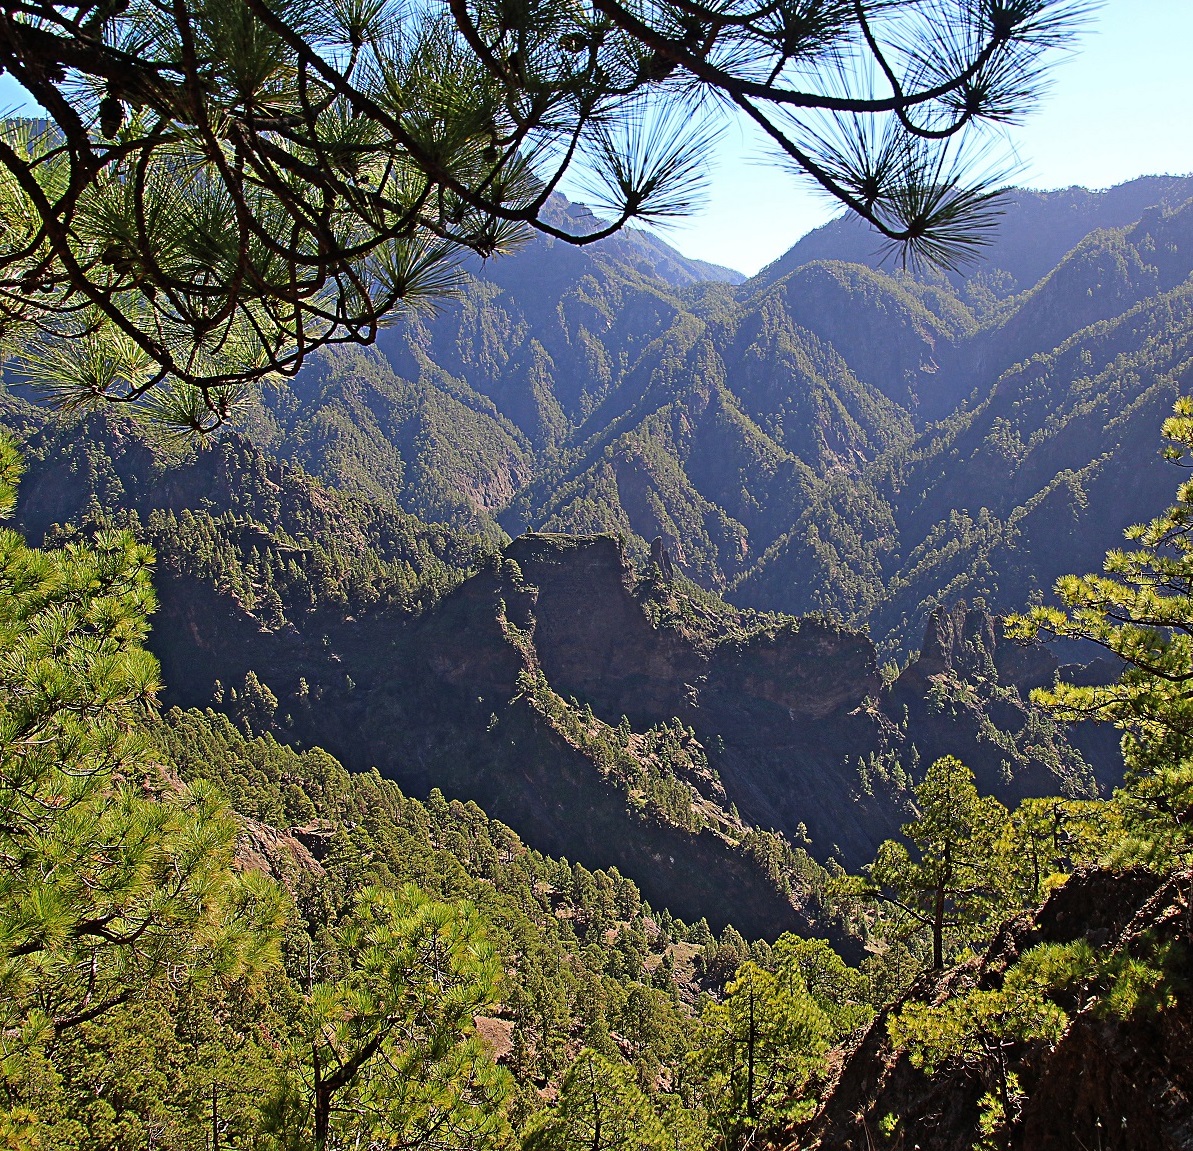 Parque Nacional De La Caldera De Taburiente (Caldera De Taburiente National Park)